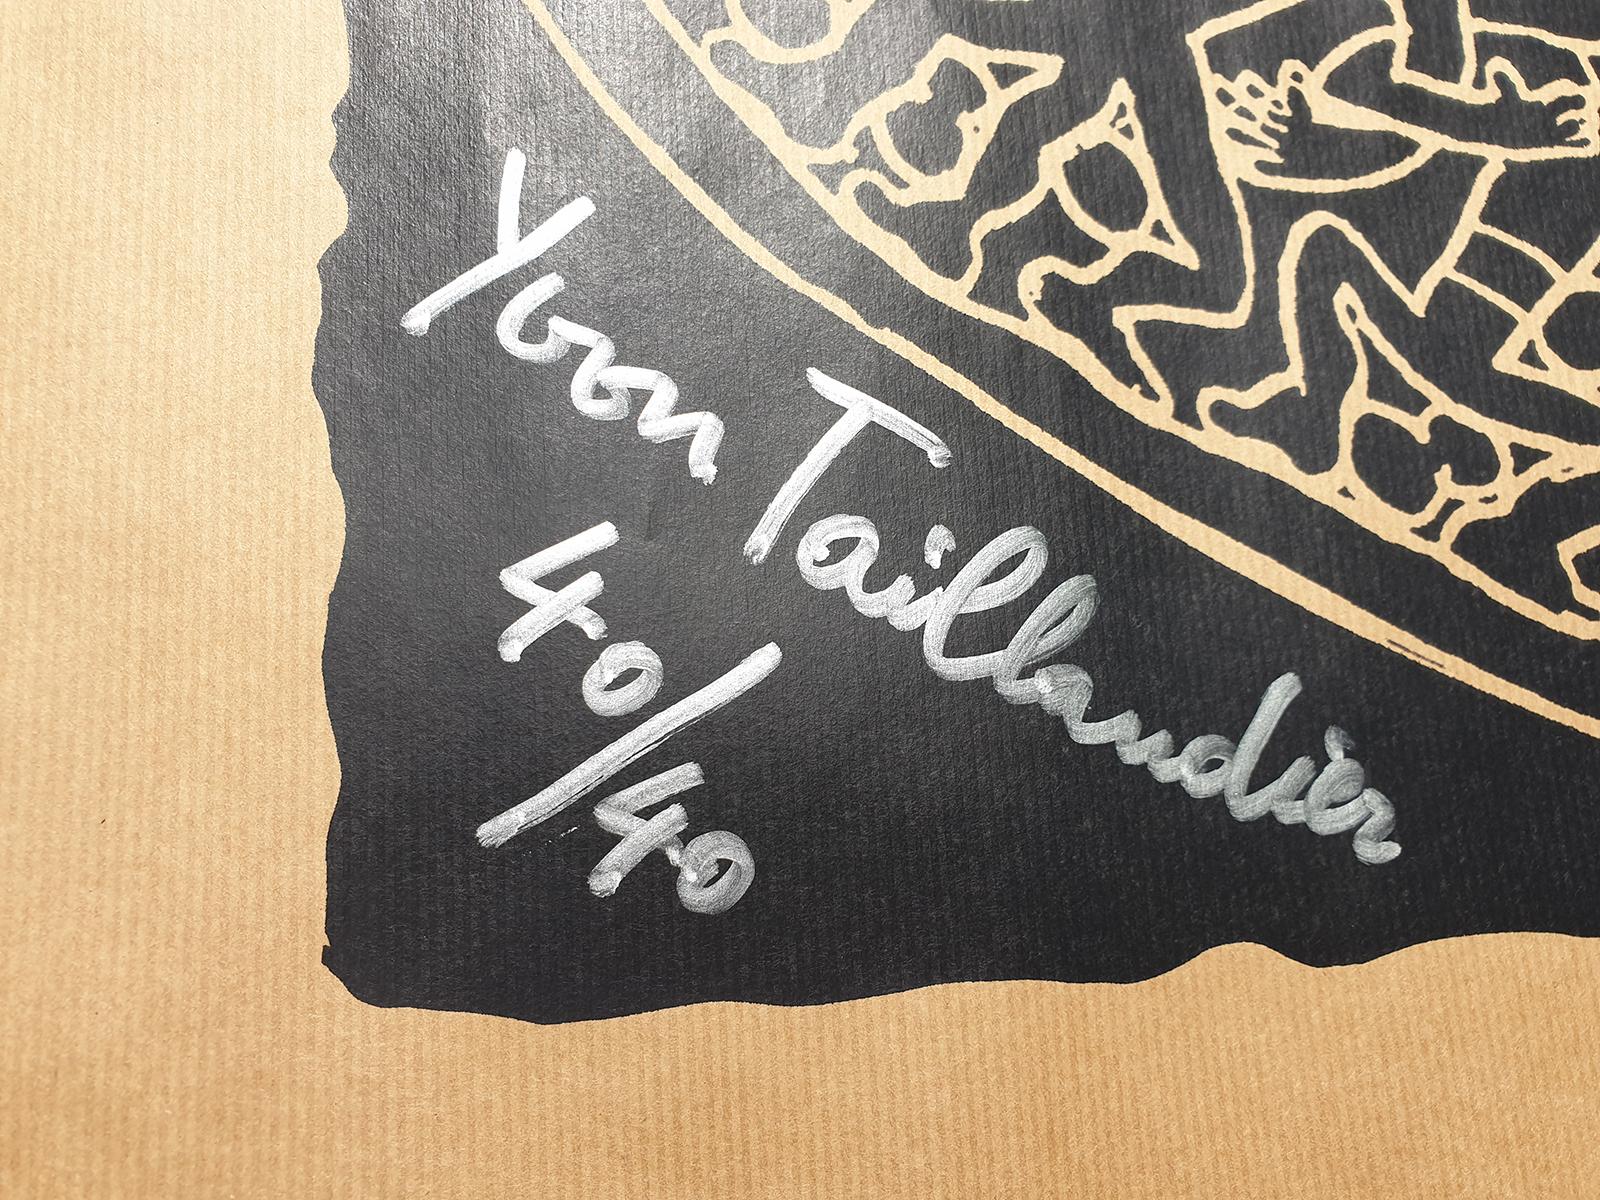 Noir tribal
2018
sérigraphie sur papier kraft
Signé et numéroté sur 40
40/40
avec certificat de la galerie
Œuvre : 65 x 100 cm
taille de l'image : 54 x 68.5 cm
Parfait état
Prix de vente : 290 euros